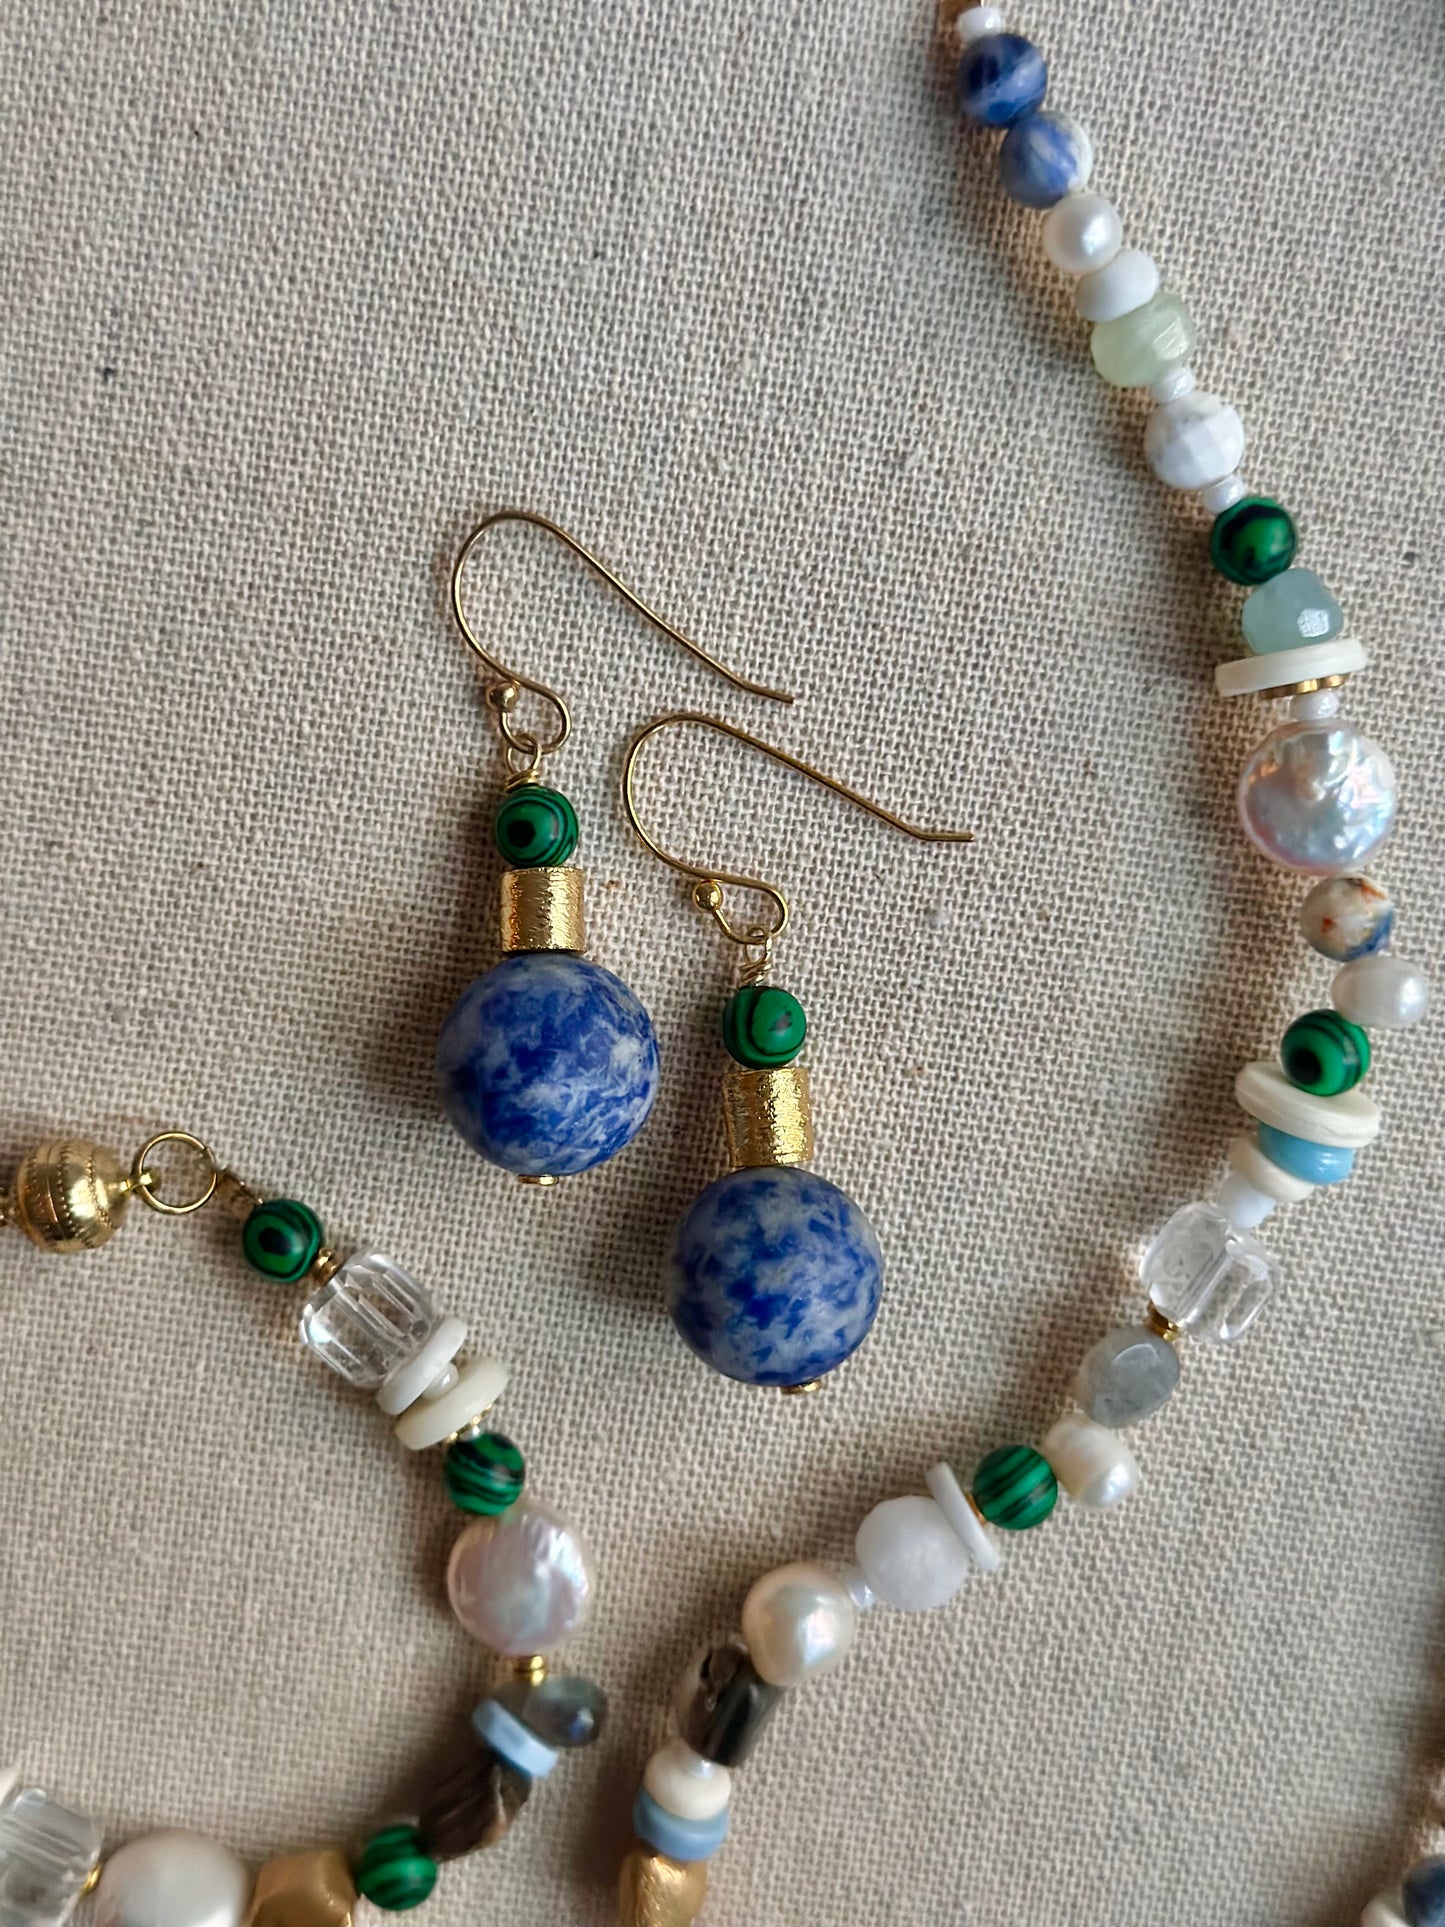 Azure earrings